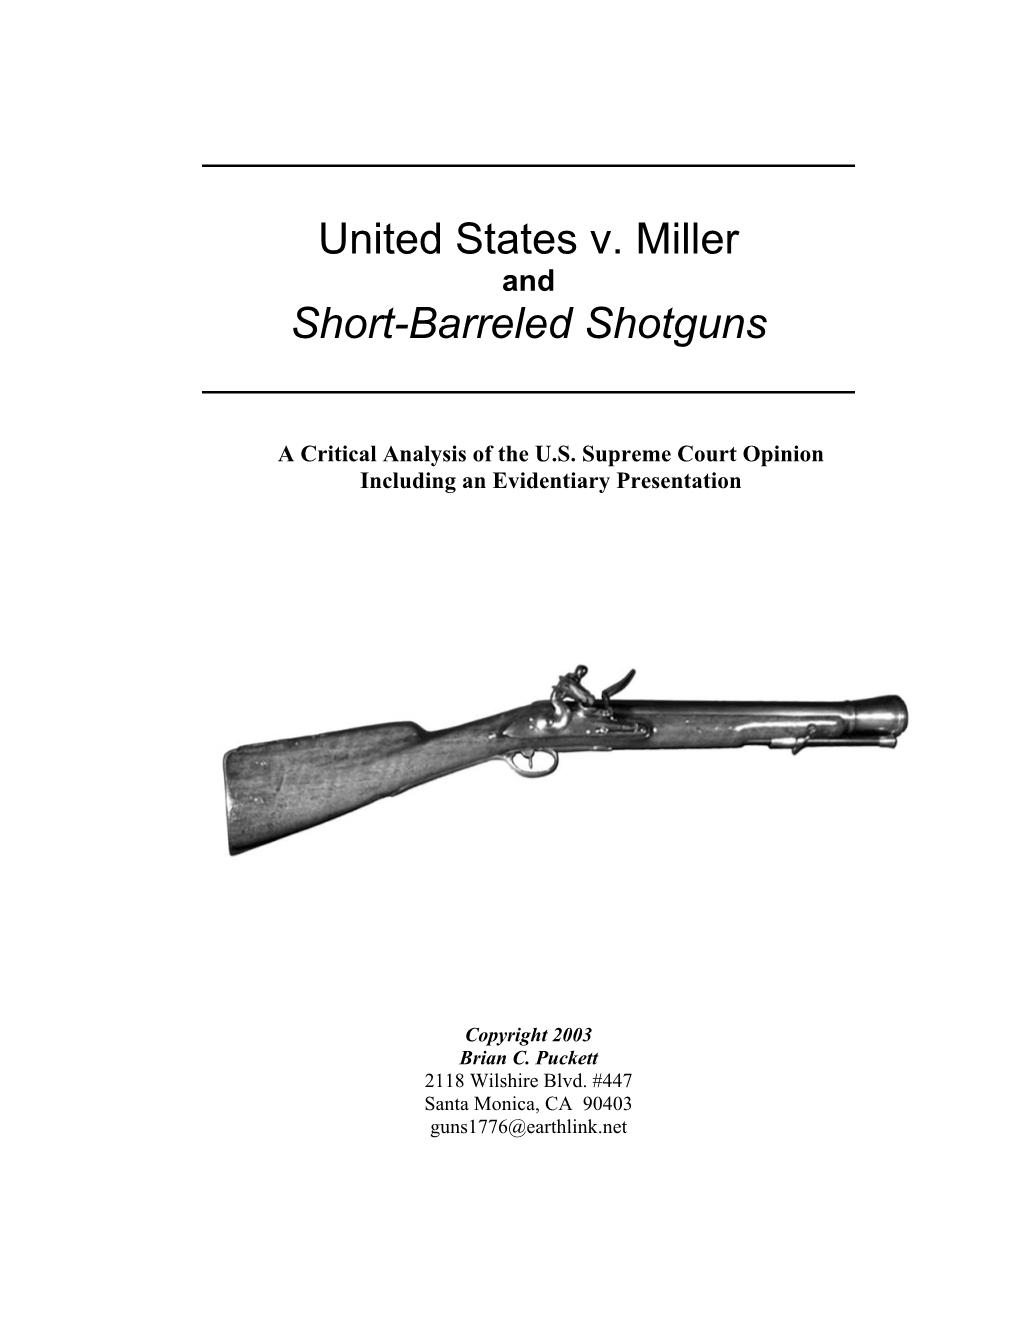 United States V. Miller Short-Barreled Shotguns